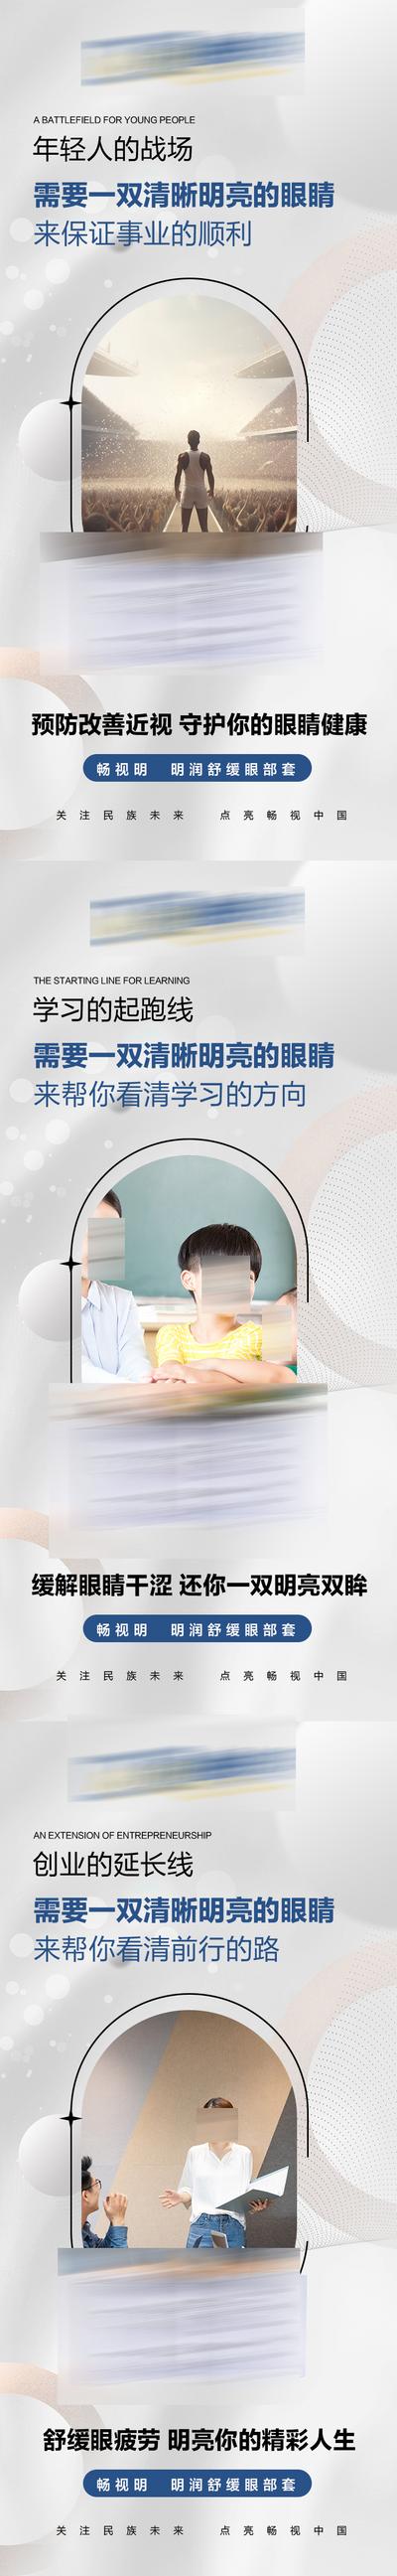 南门网 广告 新零售 眼睛 视力 宣传 微商 防控 护眼 大健康 保健 儿童 系列